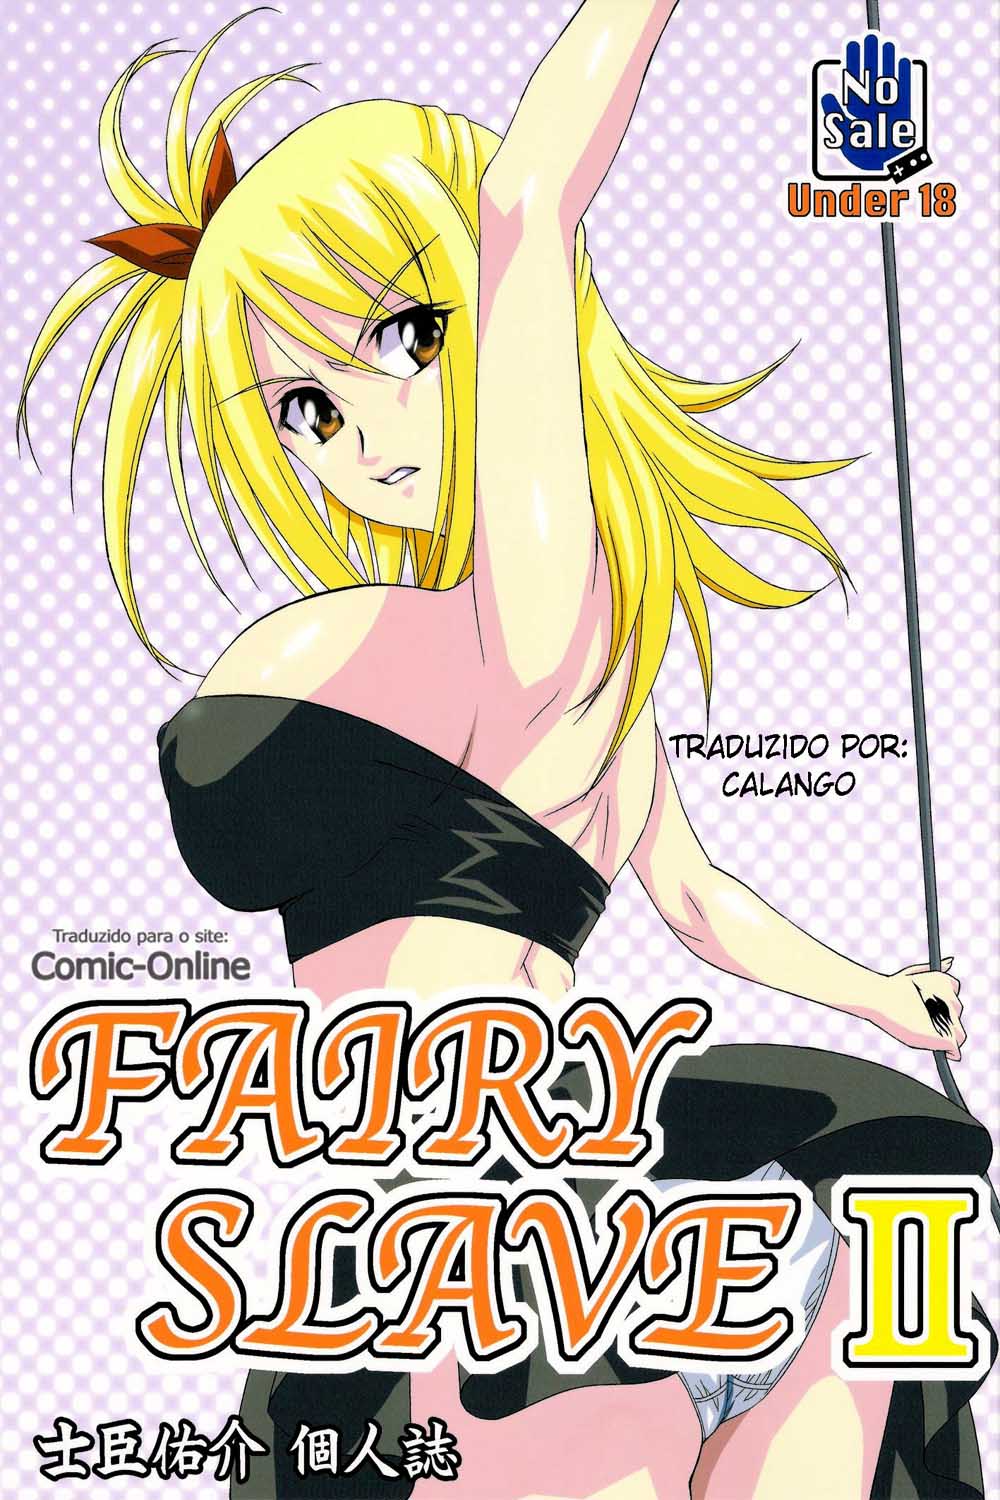 Lucy à nova puta de Fairy Tail - Foto 1